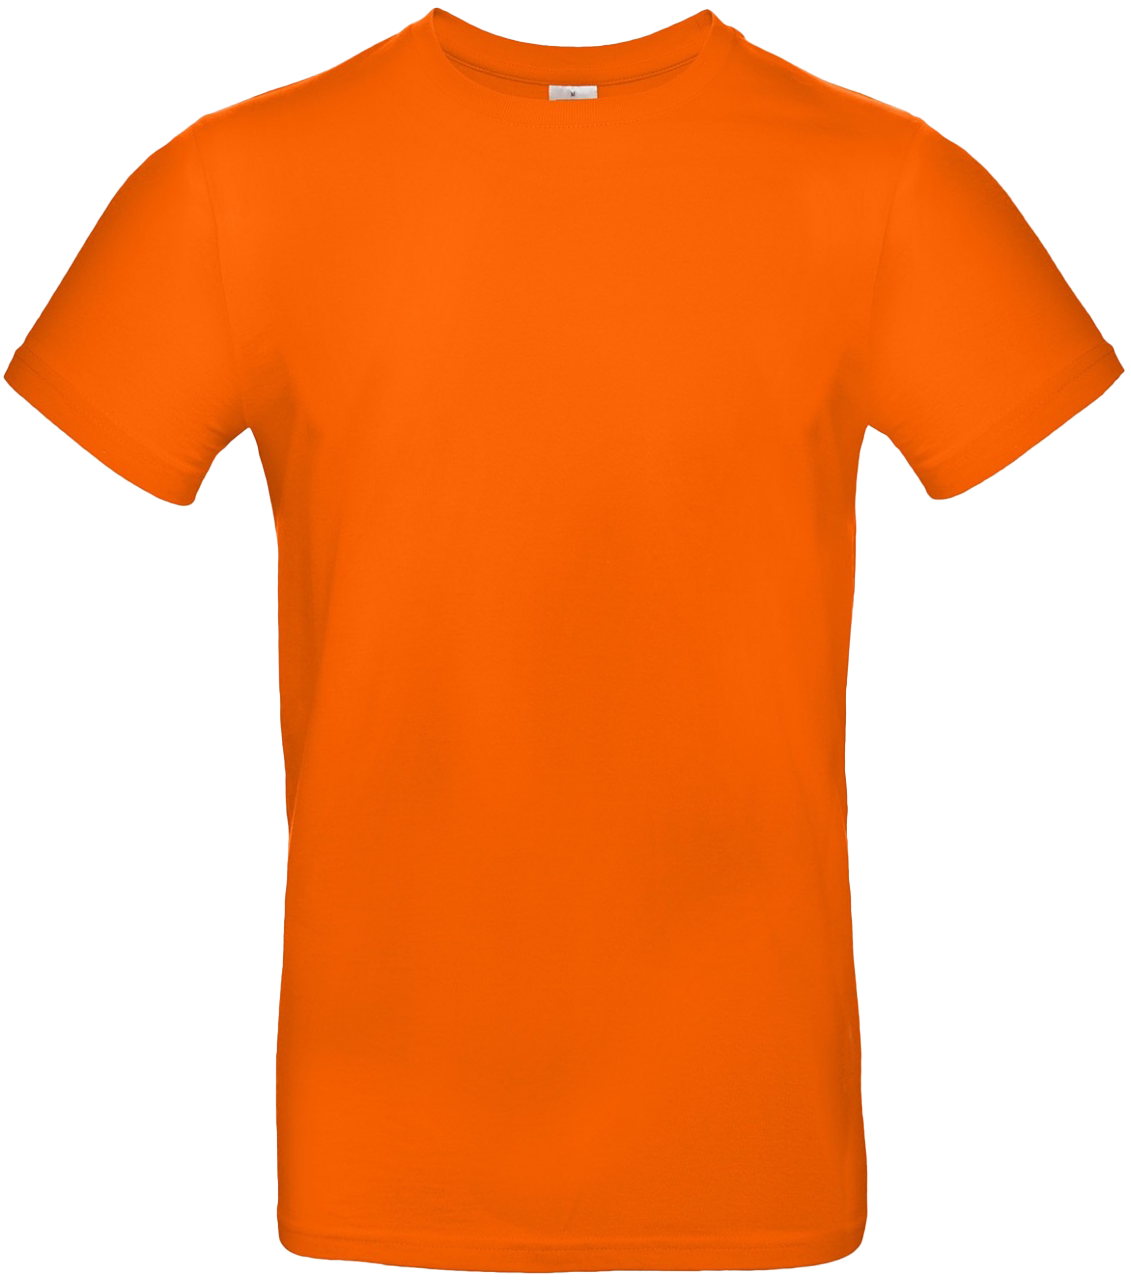 T-shirt E#190 Orange 50